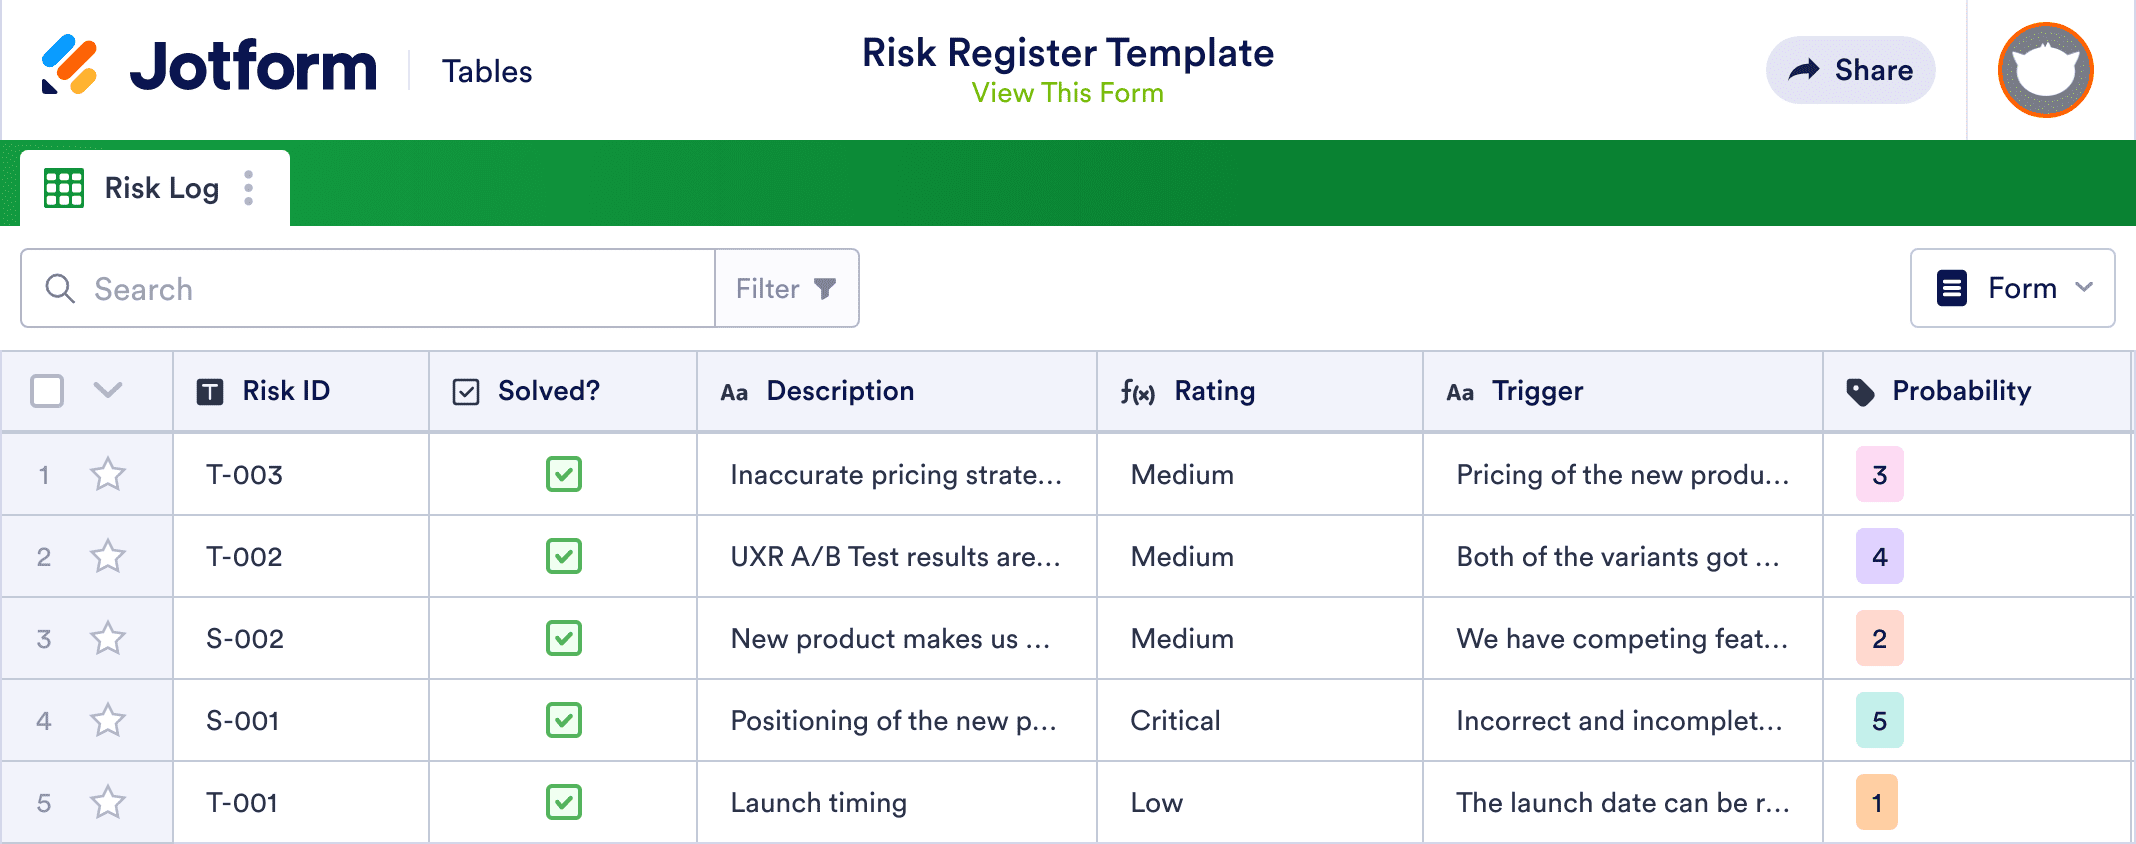 Risk Register Template